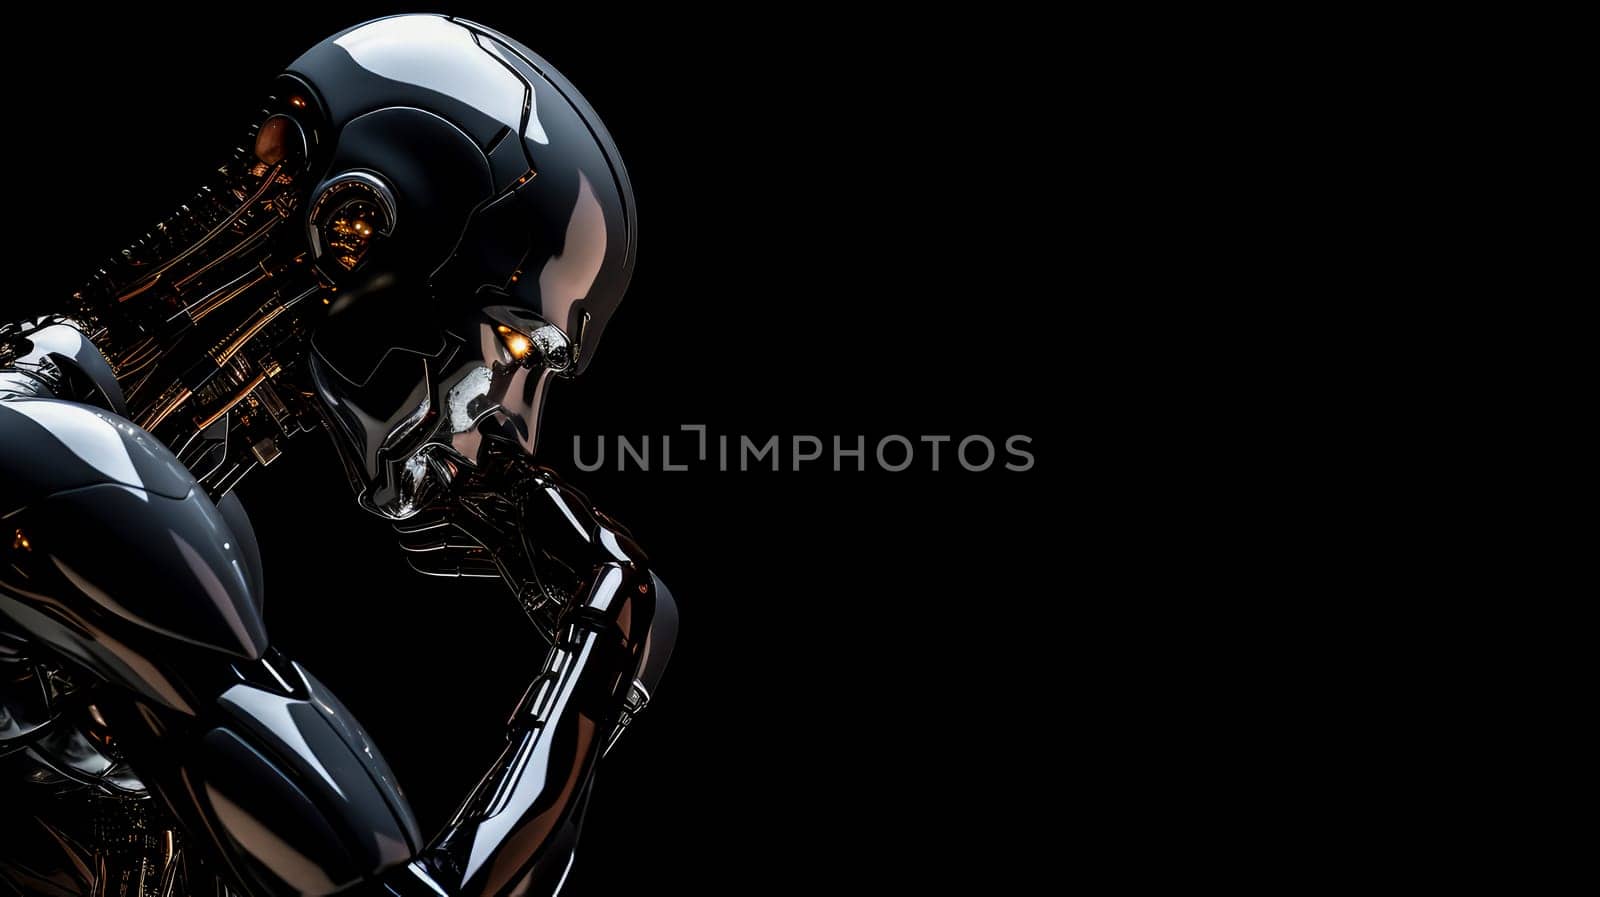 Black robot on black background by Alla_Yurtayeva